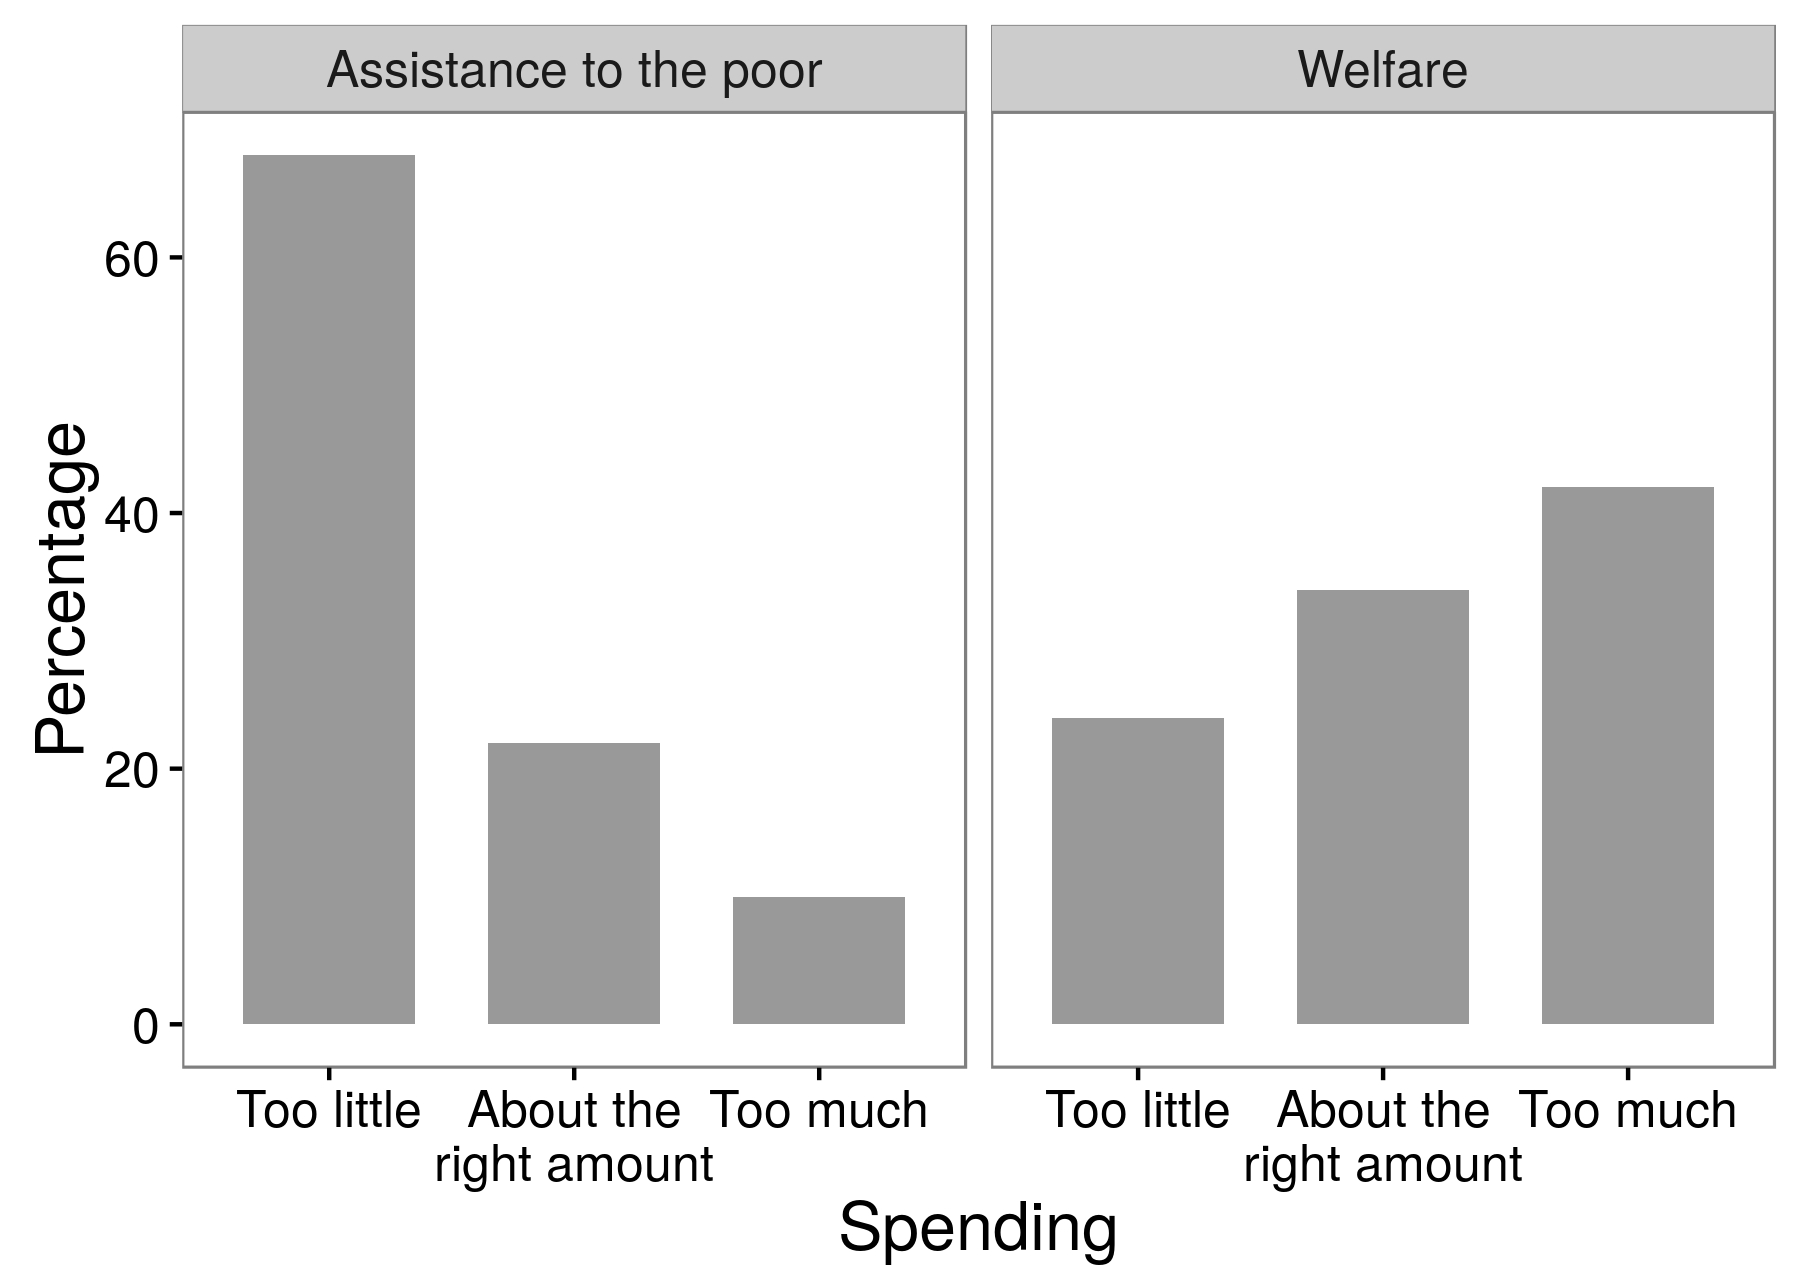 Figura 3.4: Los resultados de una encuesta muestran que los encuestados son mucho más partidarios de la ayuda a los pobres que el bienestar. Este es un ejemplo de un efecto de redacción de preguntas por el cual las respuestas que reciben los investigadores dependen exactamente de qué palabras usan en sus preguntas. Adaptado de Huber y Paris (2013), cuadro A1.